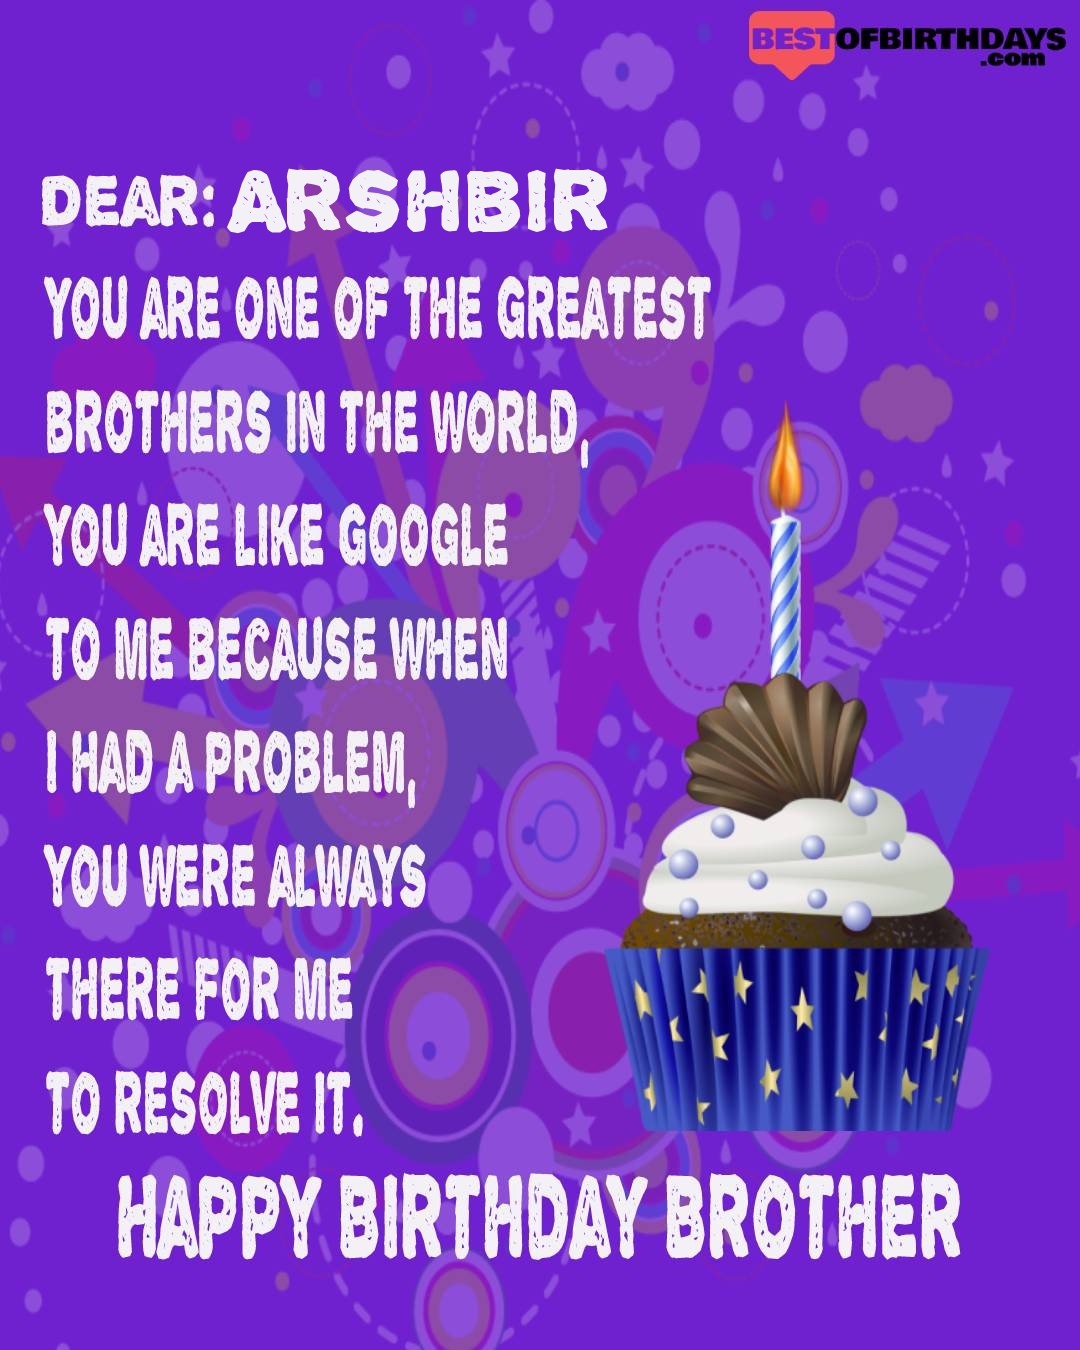 Happy birthday arshbir bhai brother bro